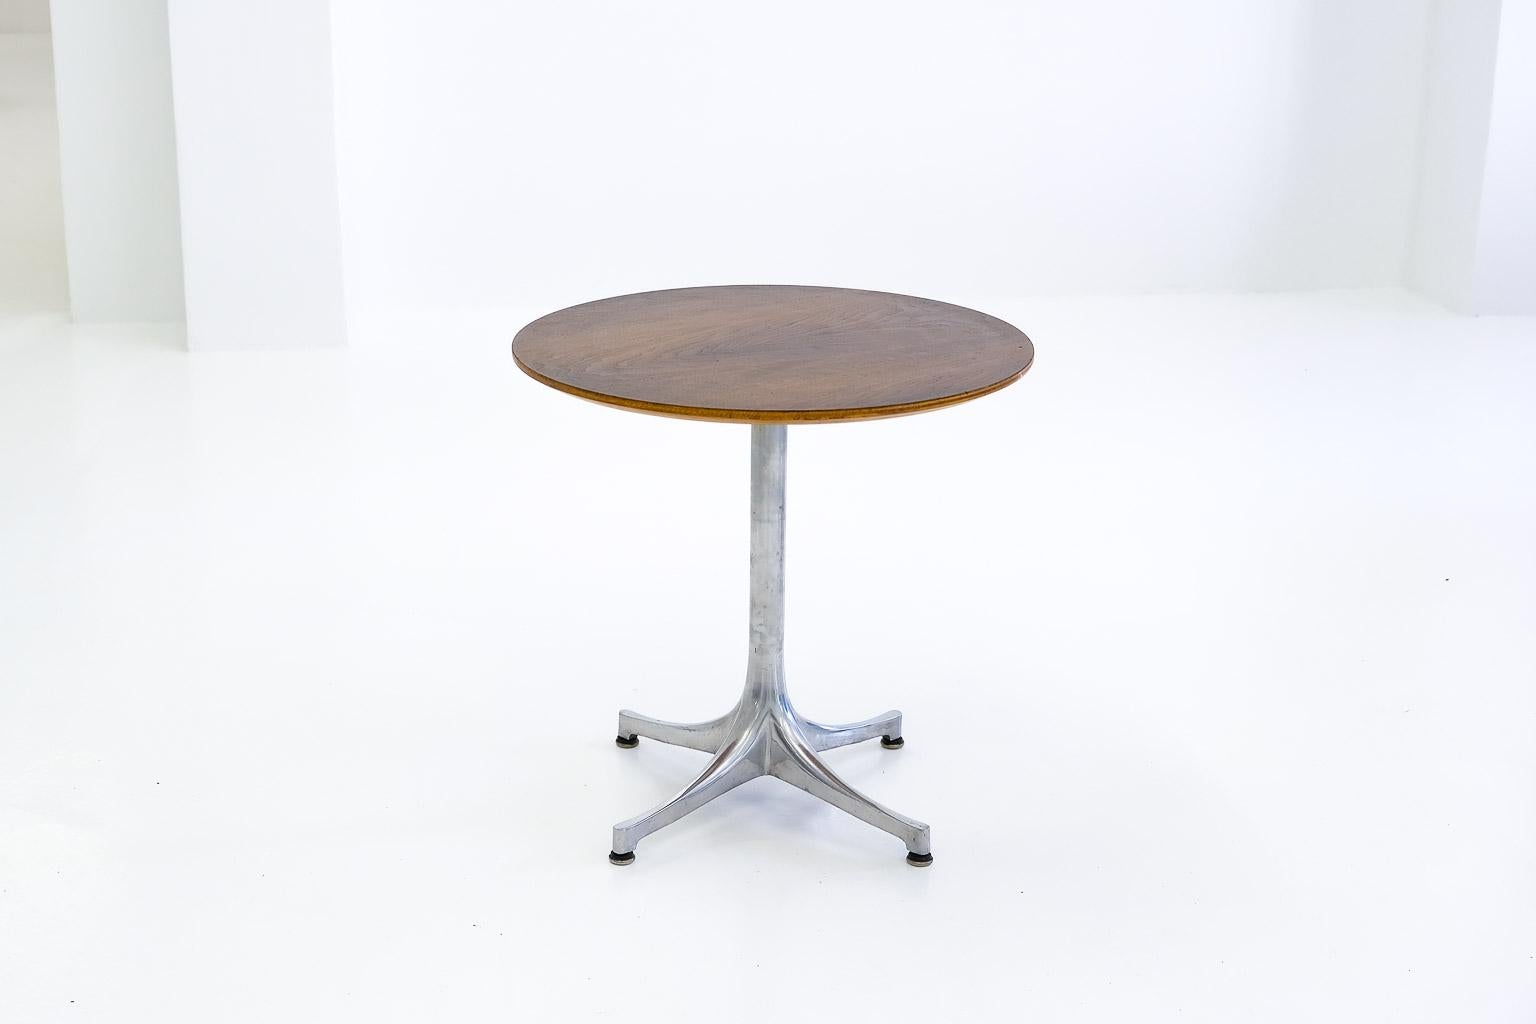 le versatile classic, conçu par george nelson en 1954, a d'abord été produit en 2 tailles avec des pieds noirs ou blancs et des plateaux de table en aggloméré, le bord de la table étant recouvert de bois de bouleau, avec une finition en plastique